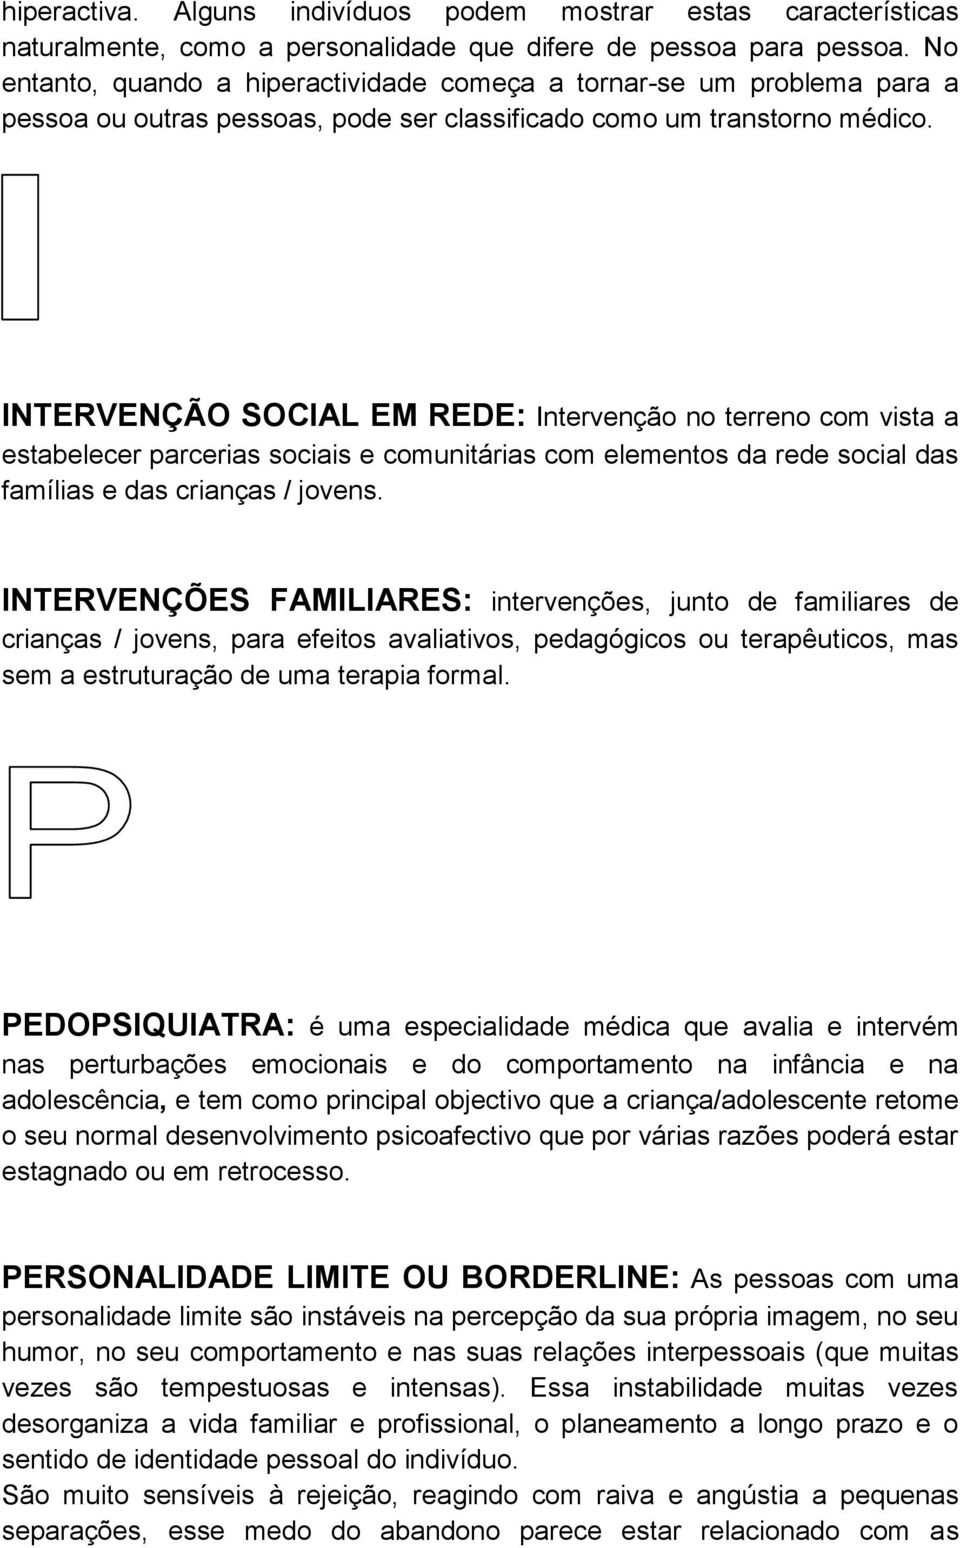 INTERVENÇÃO SOCIAL EM REDE: Intervenção no terreno com vista a estabelecer parcerias sociais e comunitárias com elementos da rede social das famílias e das crianças / jovens.